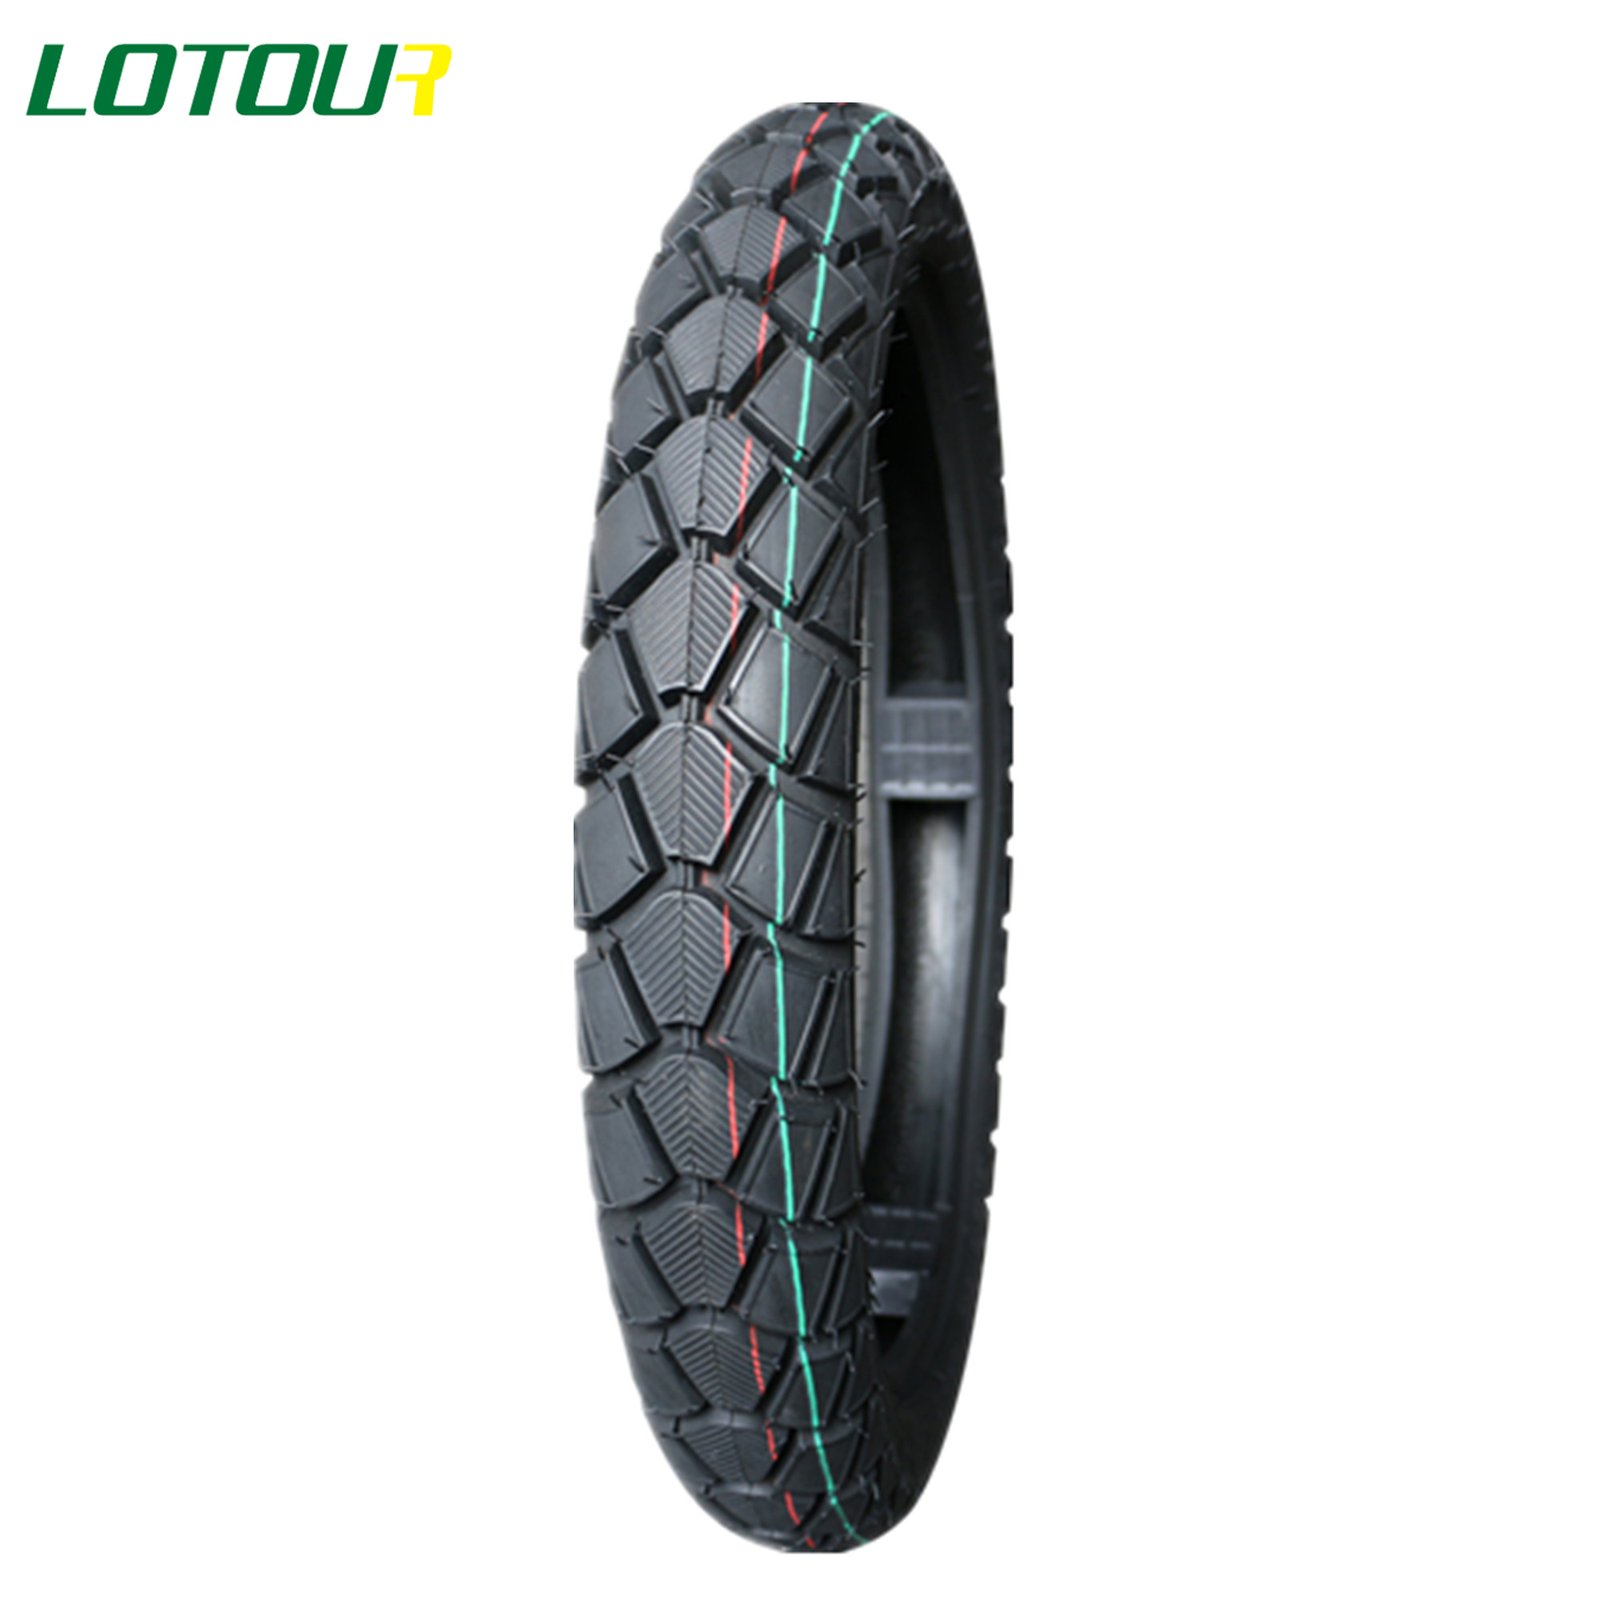 Lotour Tire M2096